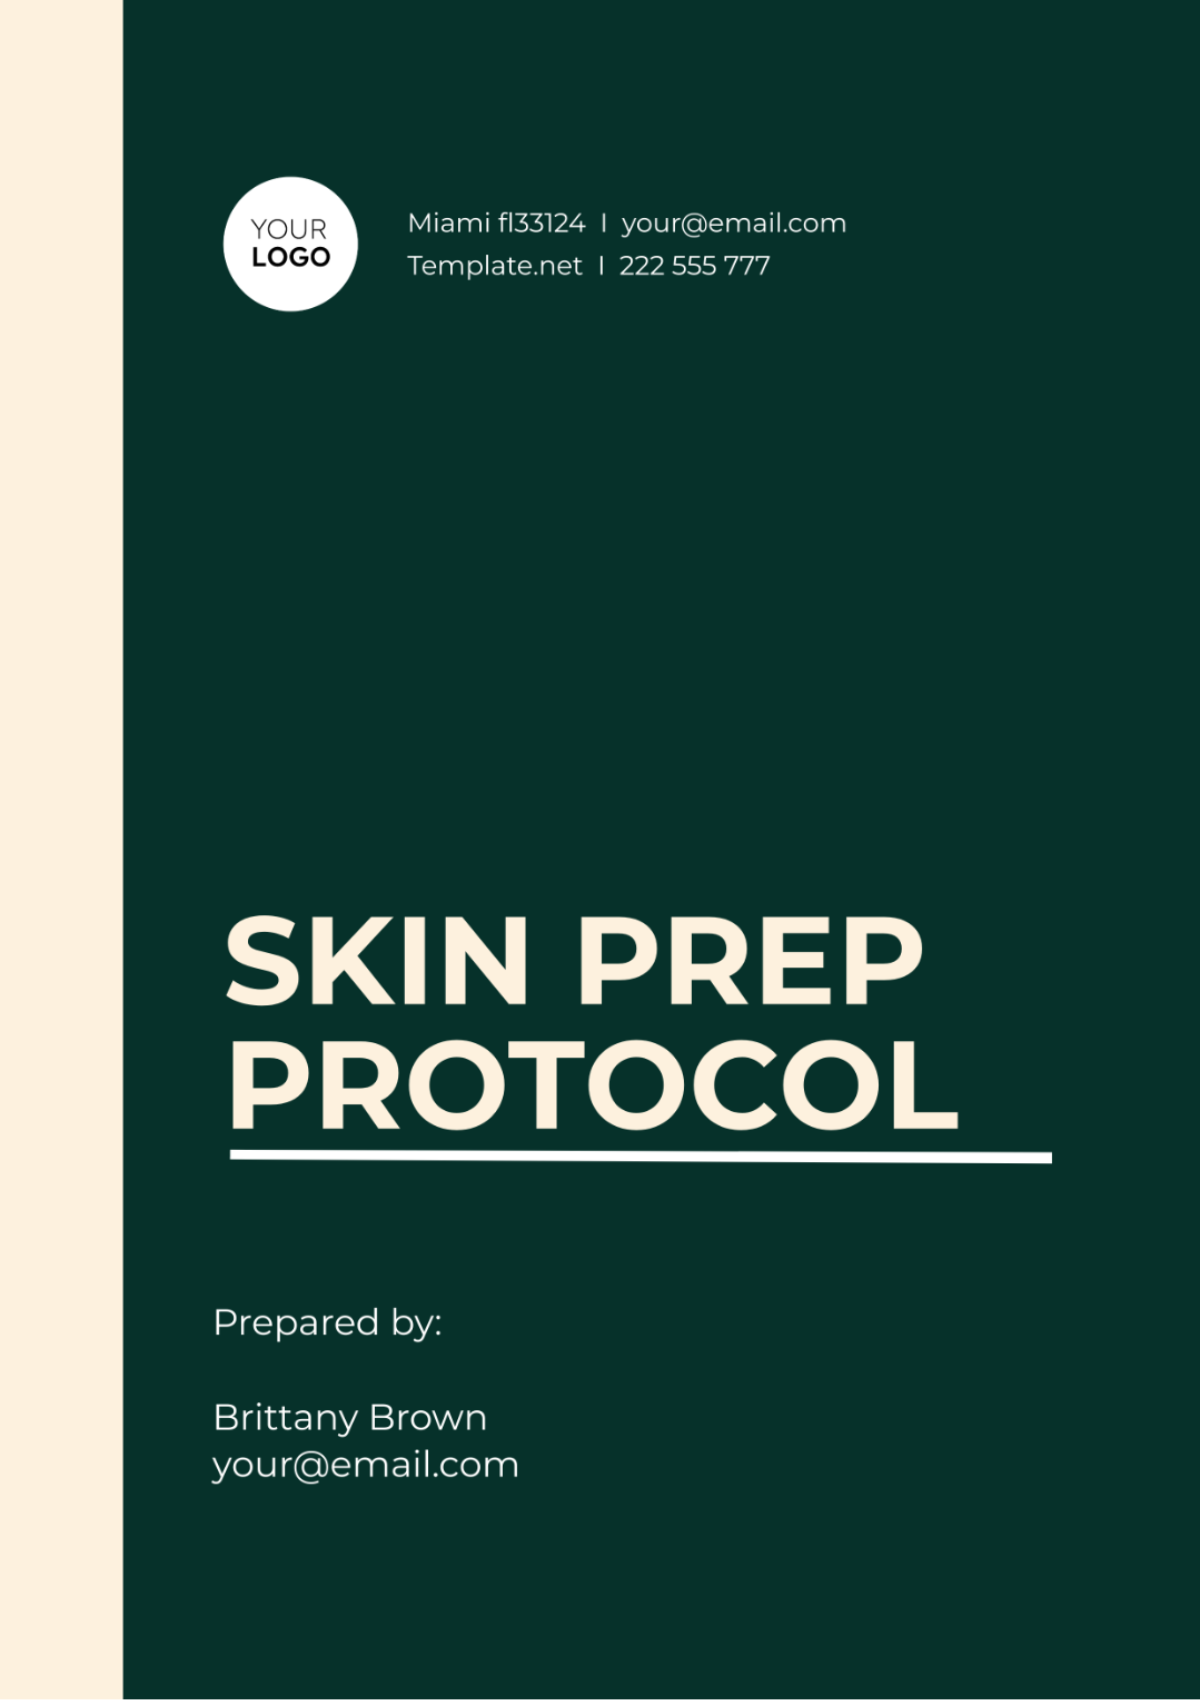 Skin Prep Protocol Template